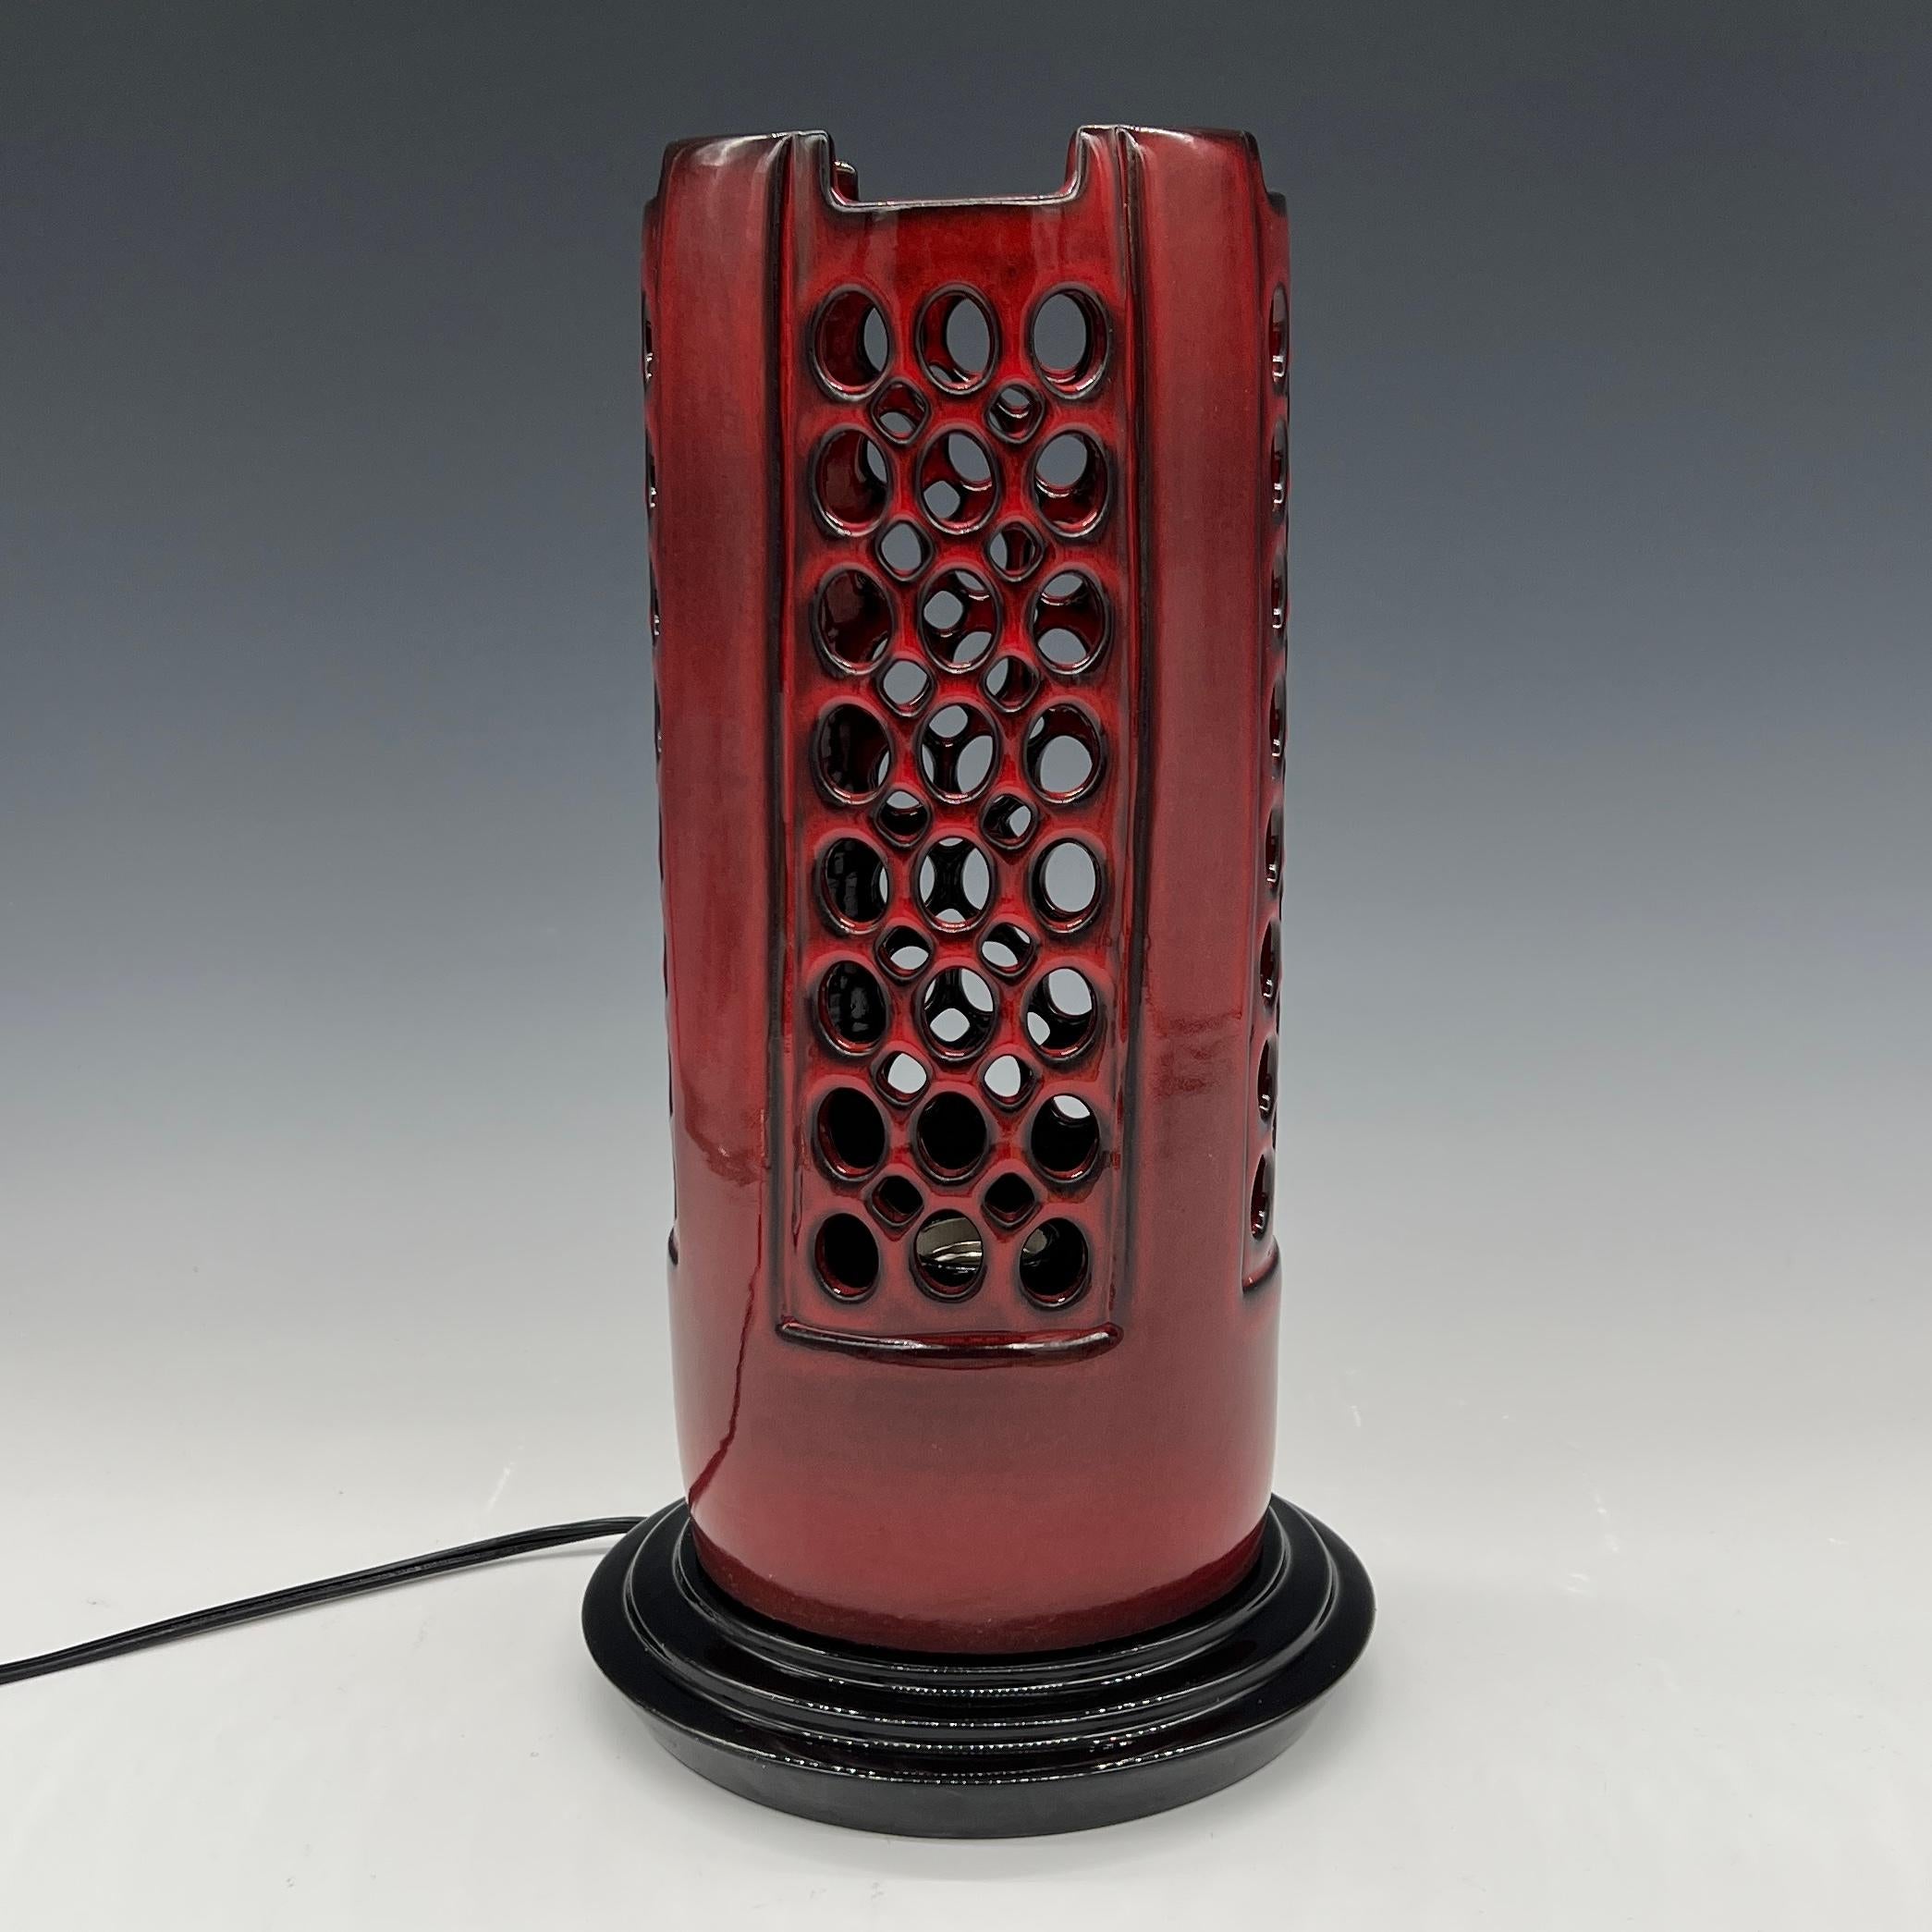 Diese Lampe wurde auf der Drehscheibe gedreht und von Hand mit einer leuchtenden, glänzenden roten Glasur versehen, die am Rand und an den Kanten schwarz ausläuft.
Der Sockel ist aus radgedrehter Keramik mit glasig schwarzer Glasur
Schwarzes Kabel